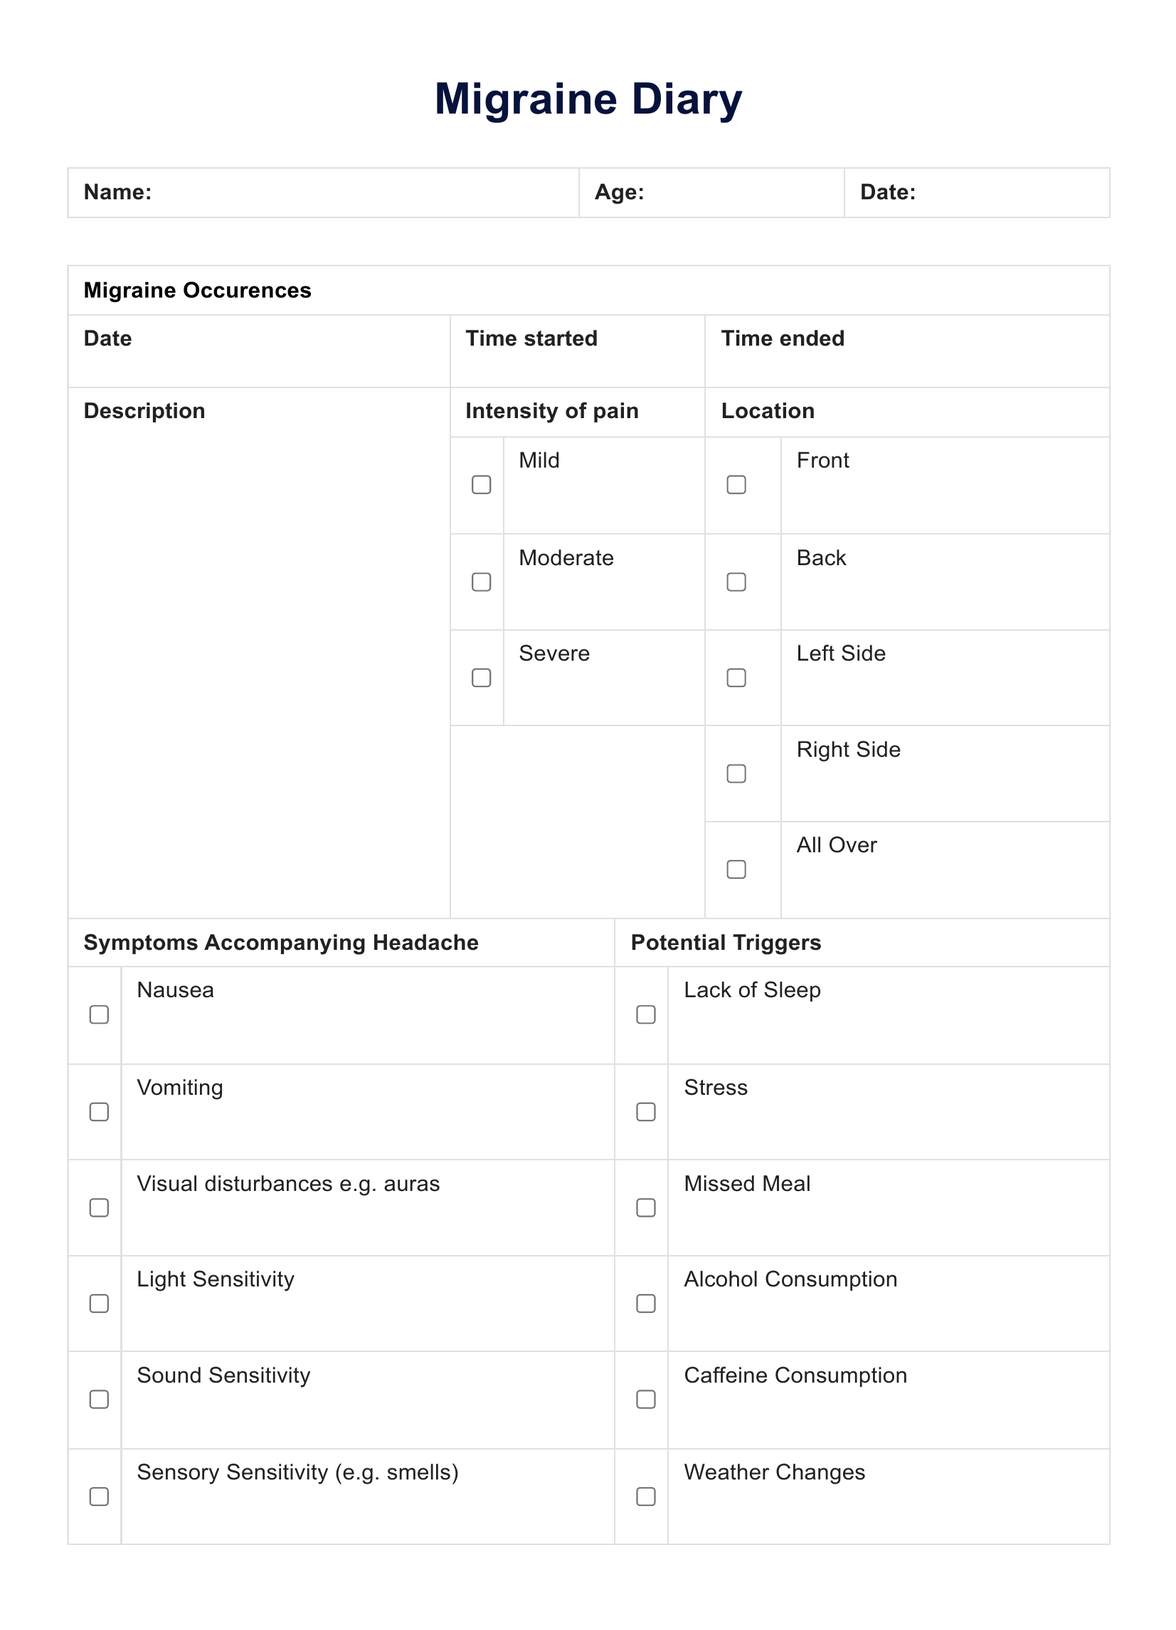 Migraine Diary PDF Example